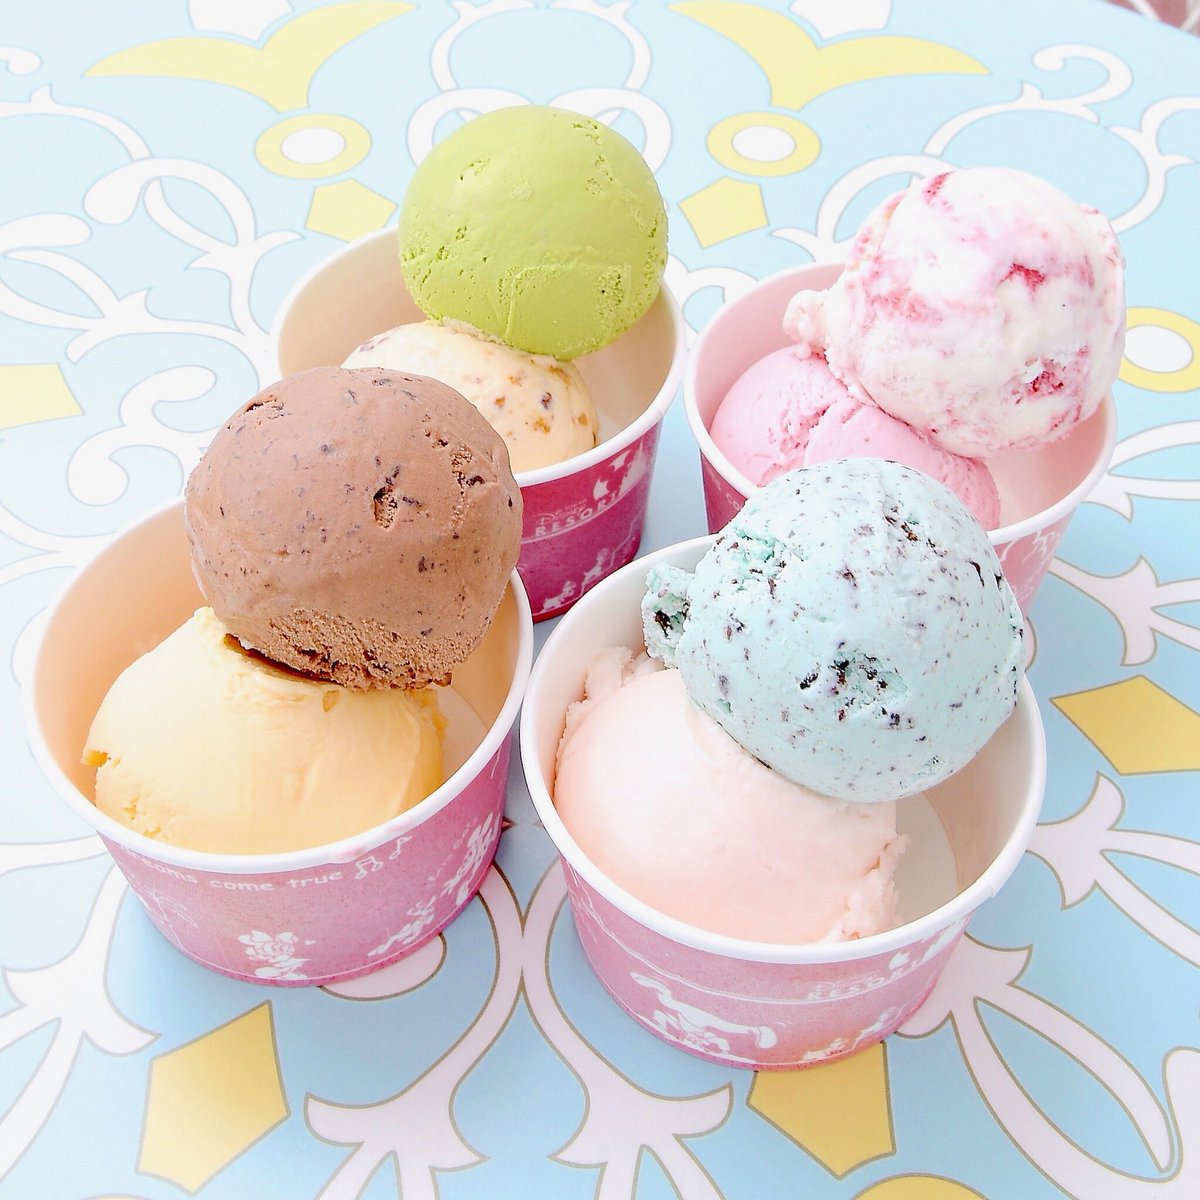 Mezzomikiのディズニーブログ A Twitter 夏季限定チョコレートミント ピーチシャーベットも美味しい Tdl アイスクリームコーン のアイスクリーム T Co Syomnpqysp